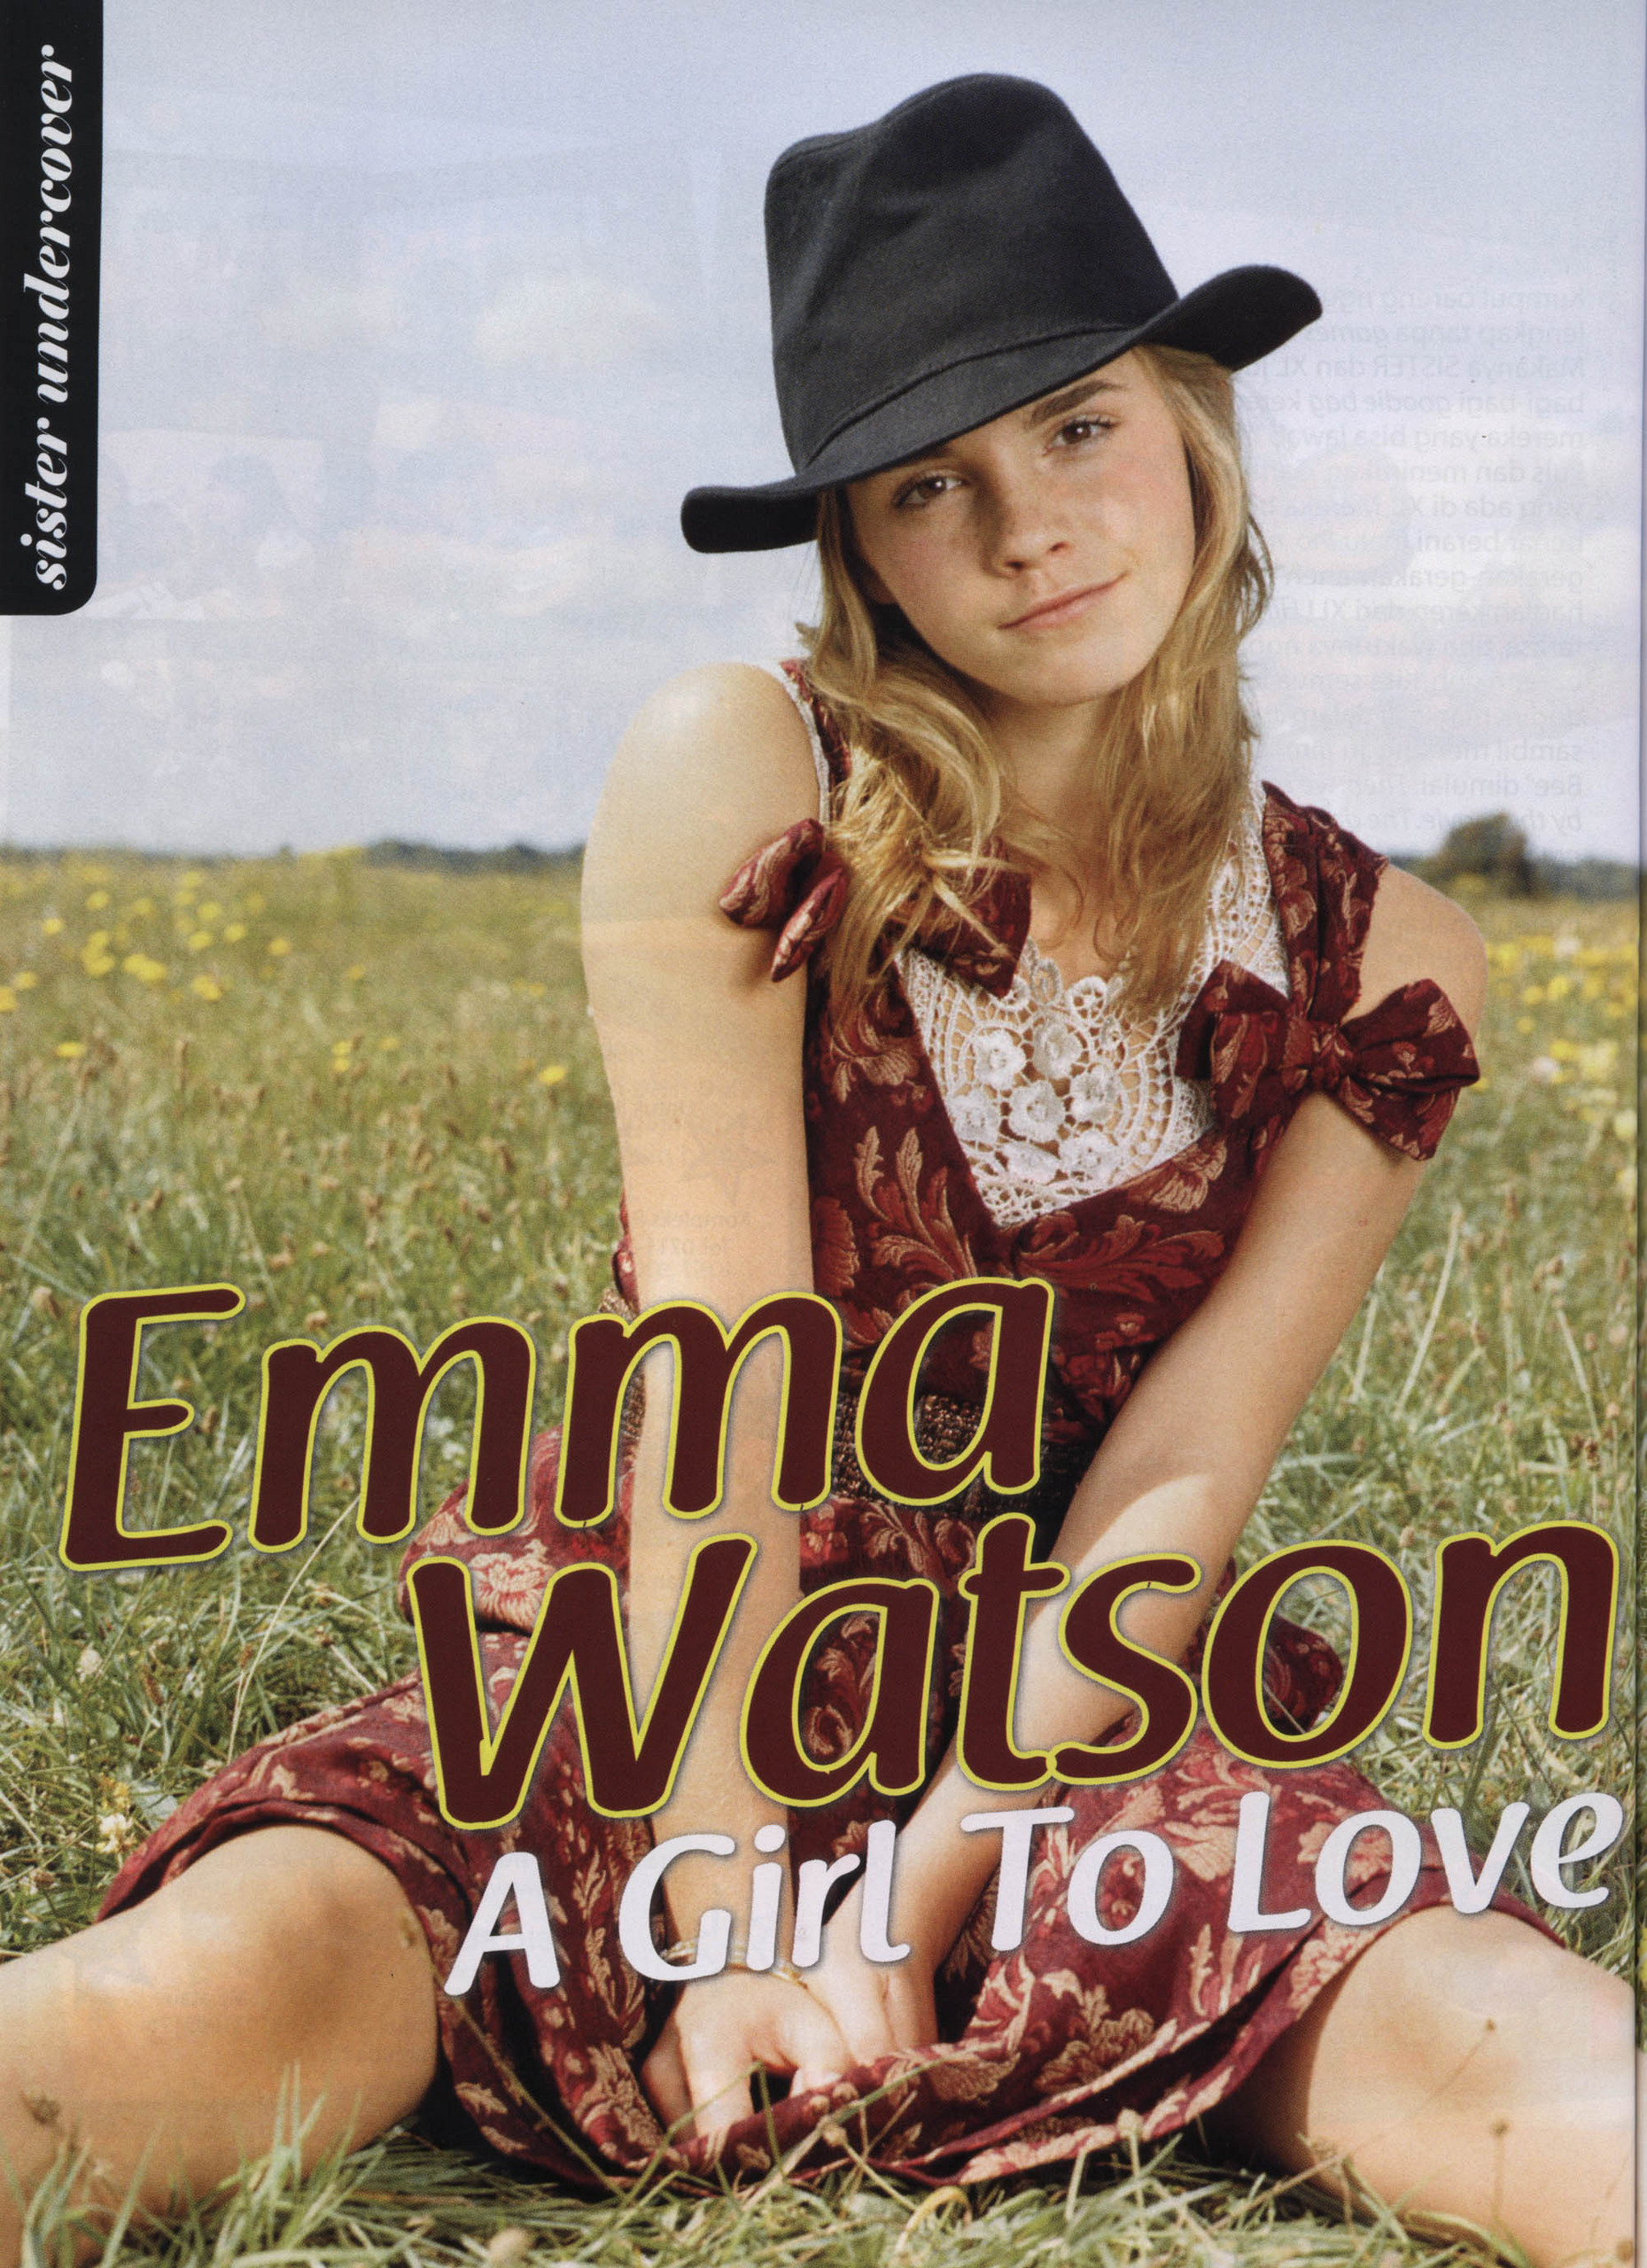 Sister magazine. Emma Watson Magazine. Журнал Систерс.